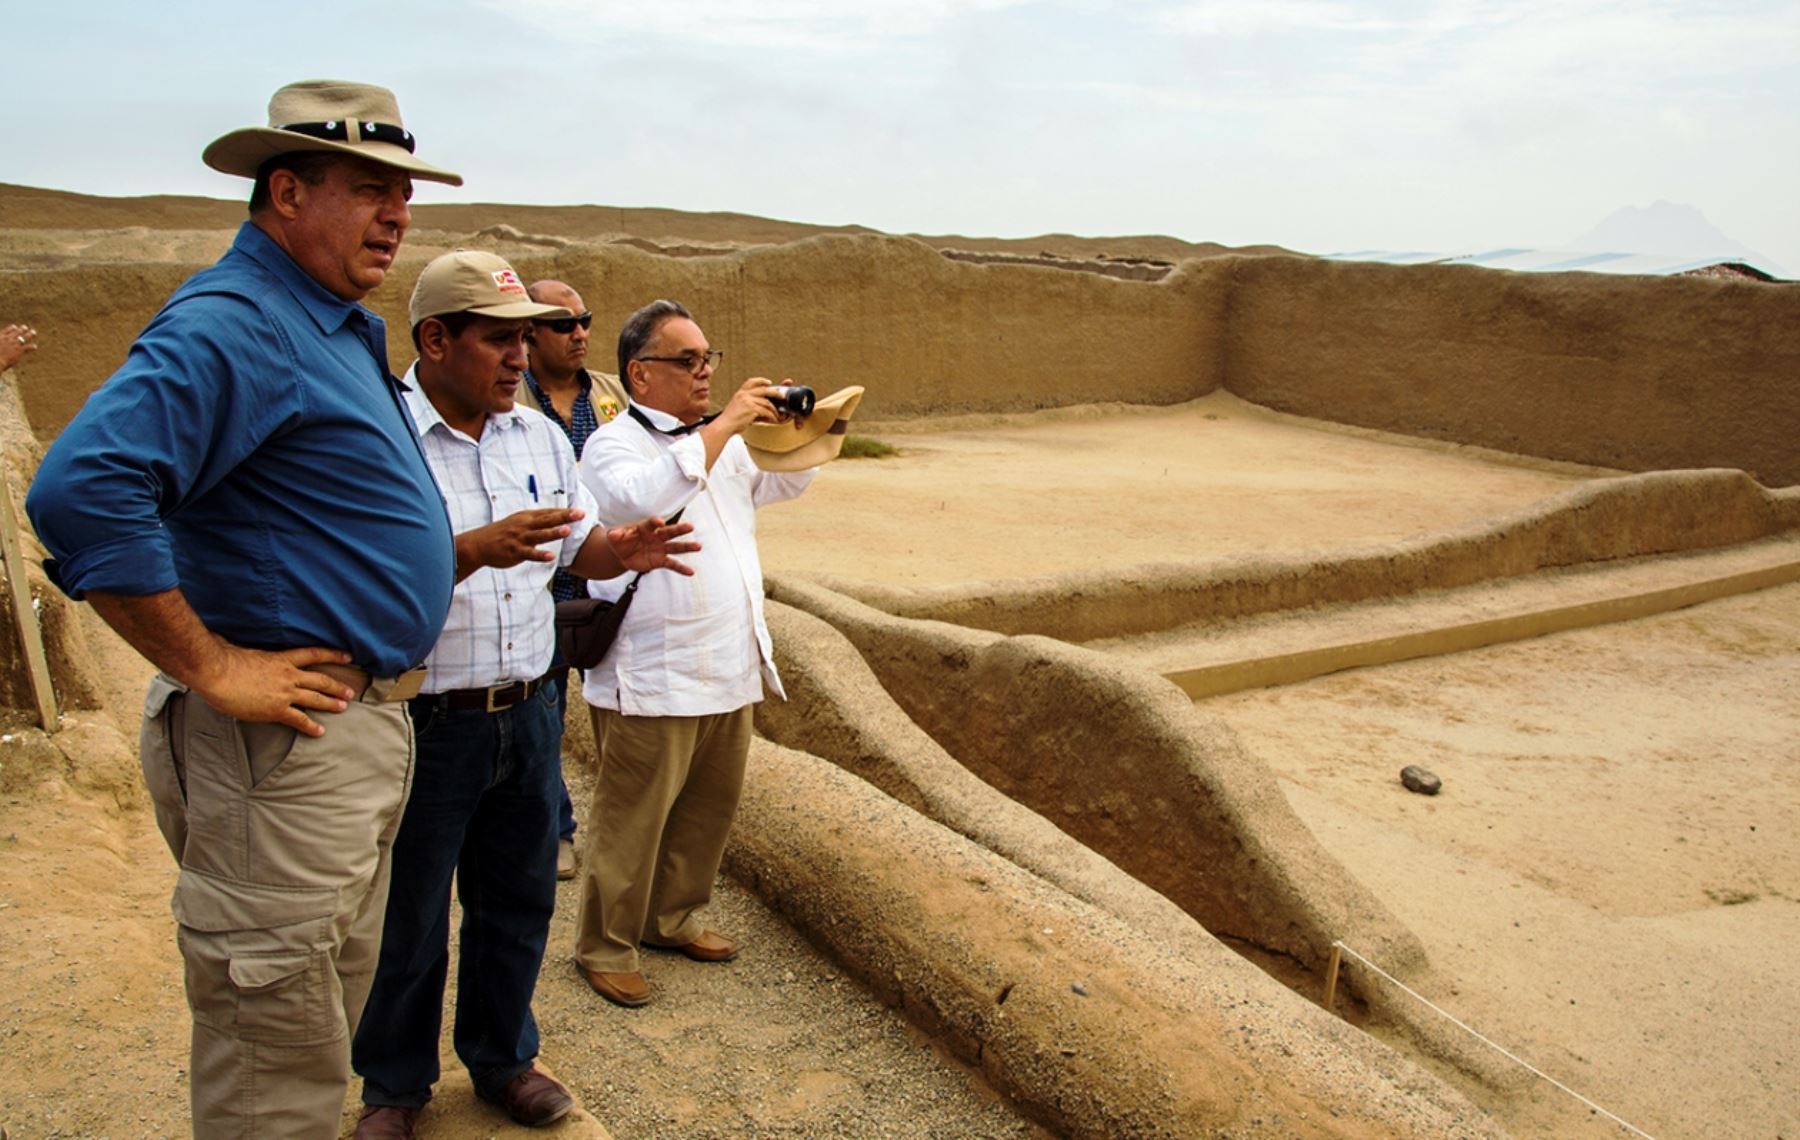 El presidente de Costa Rica, Luis Guillermo Solís, visitó el complejo arqueológico Chan Chan, en Trujillo, La Libertad. ANDINA